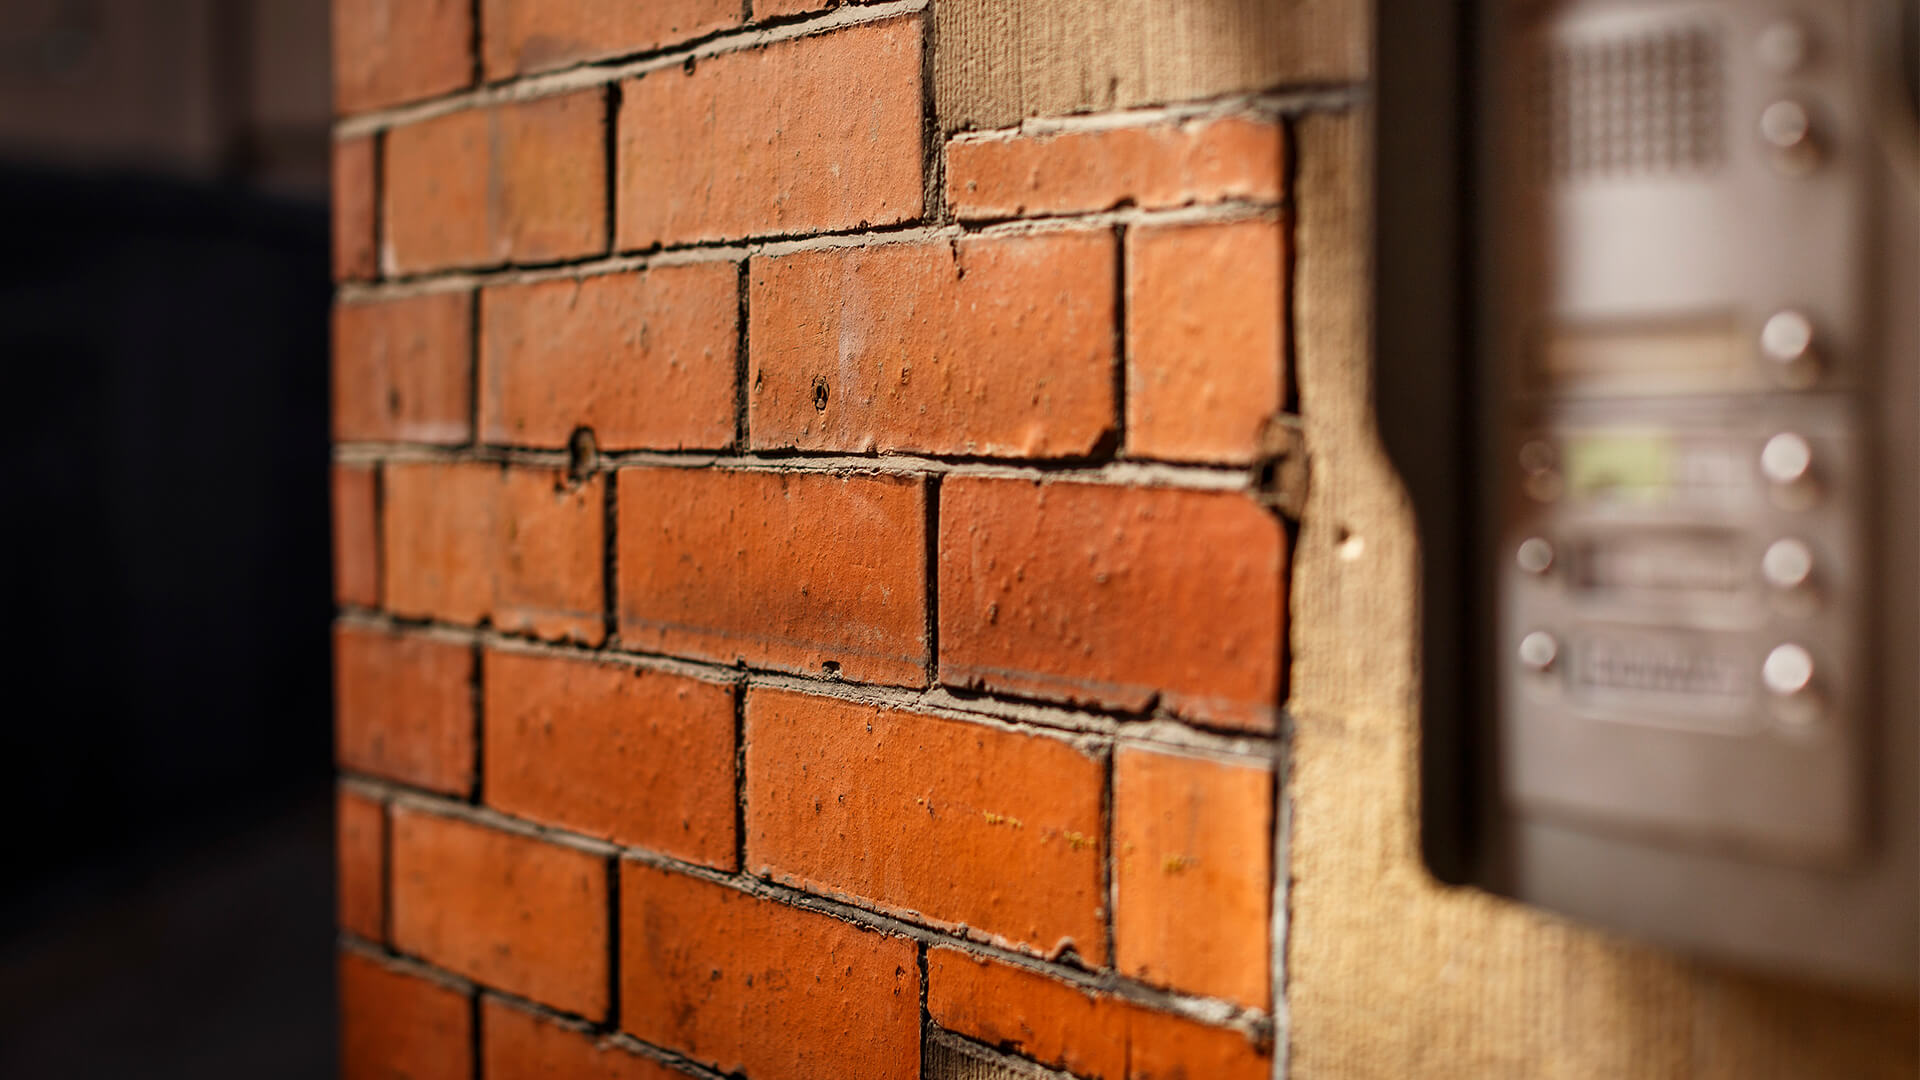 A close up of orange bricks and the intercom at 10-13 Thomas Street